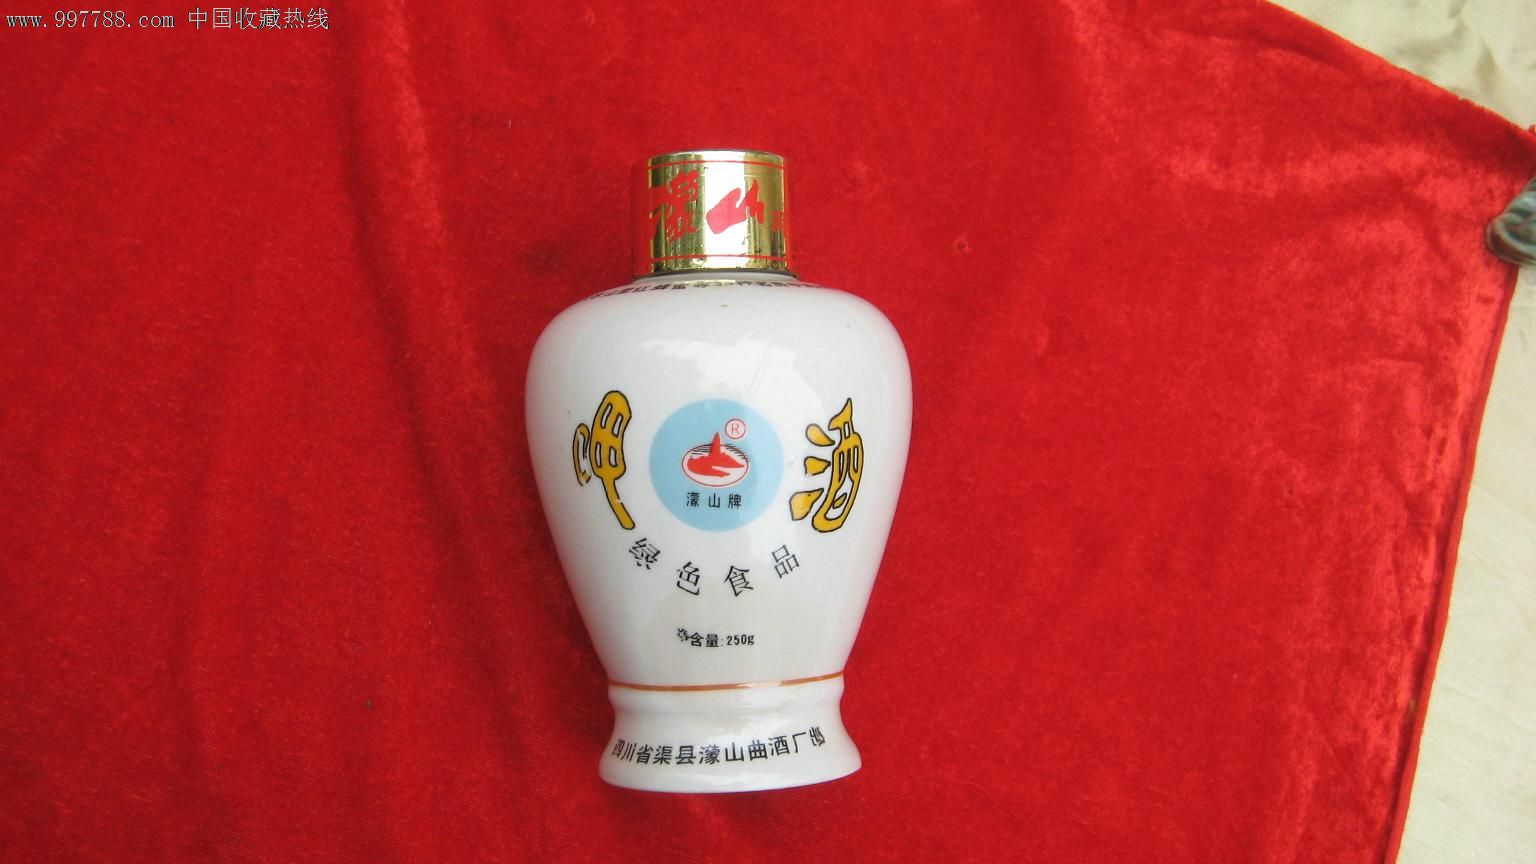 【酒瓶收藏】八十年代人物瓶半斤装酒壶(完美品相)